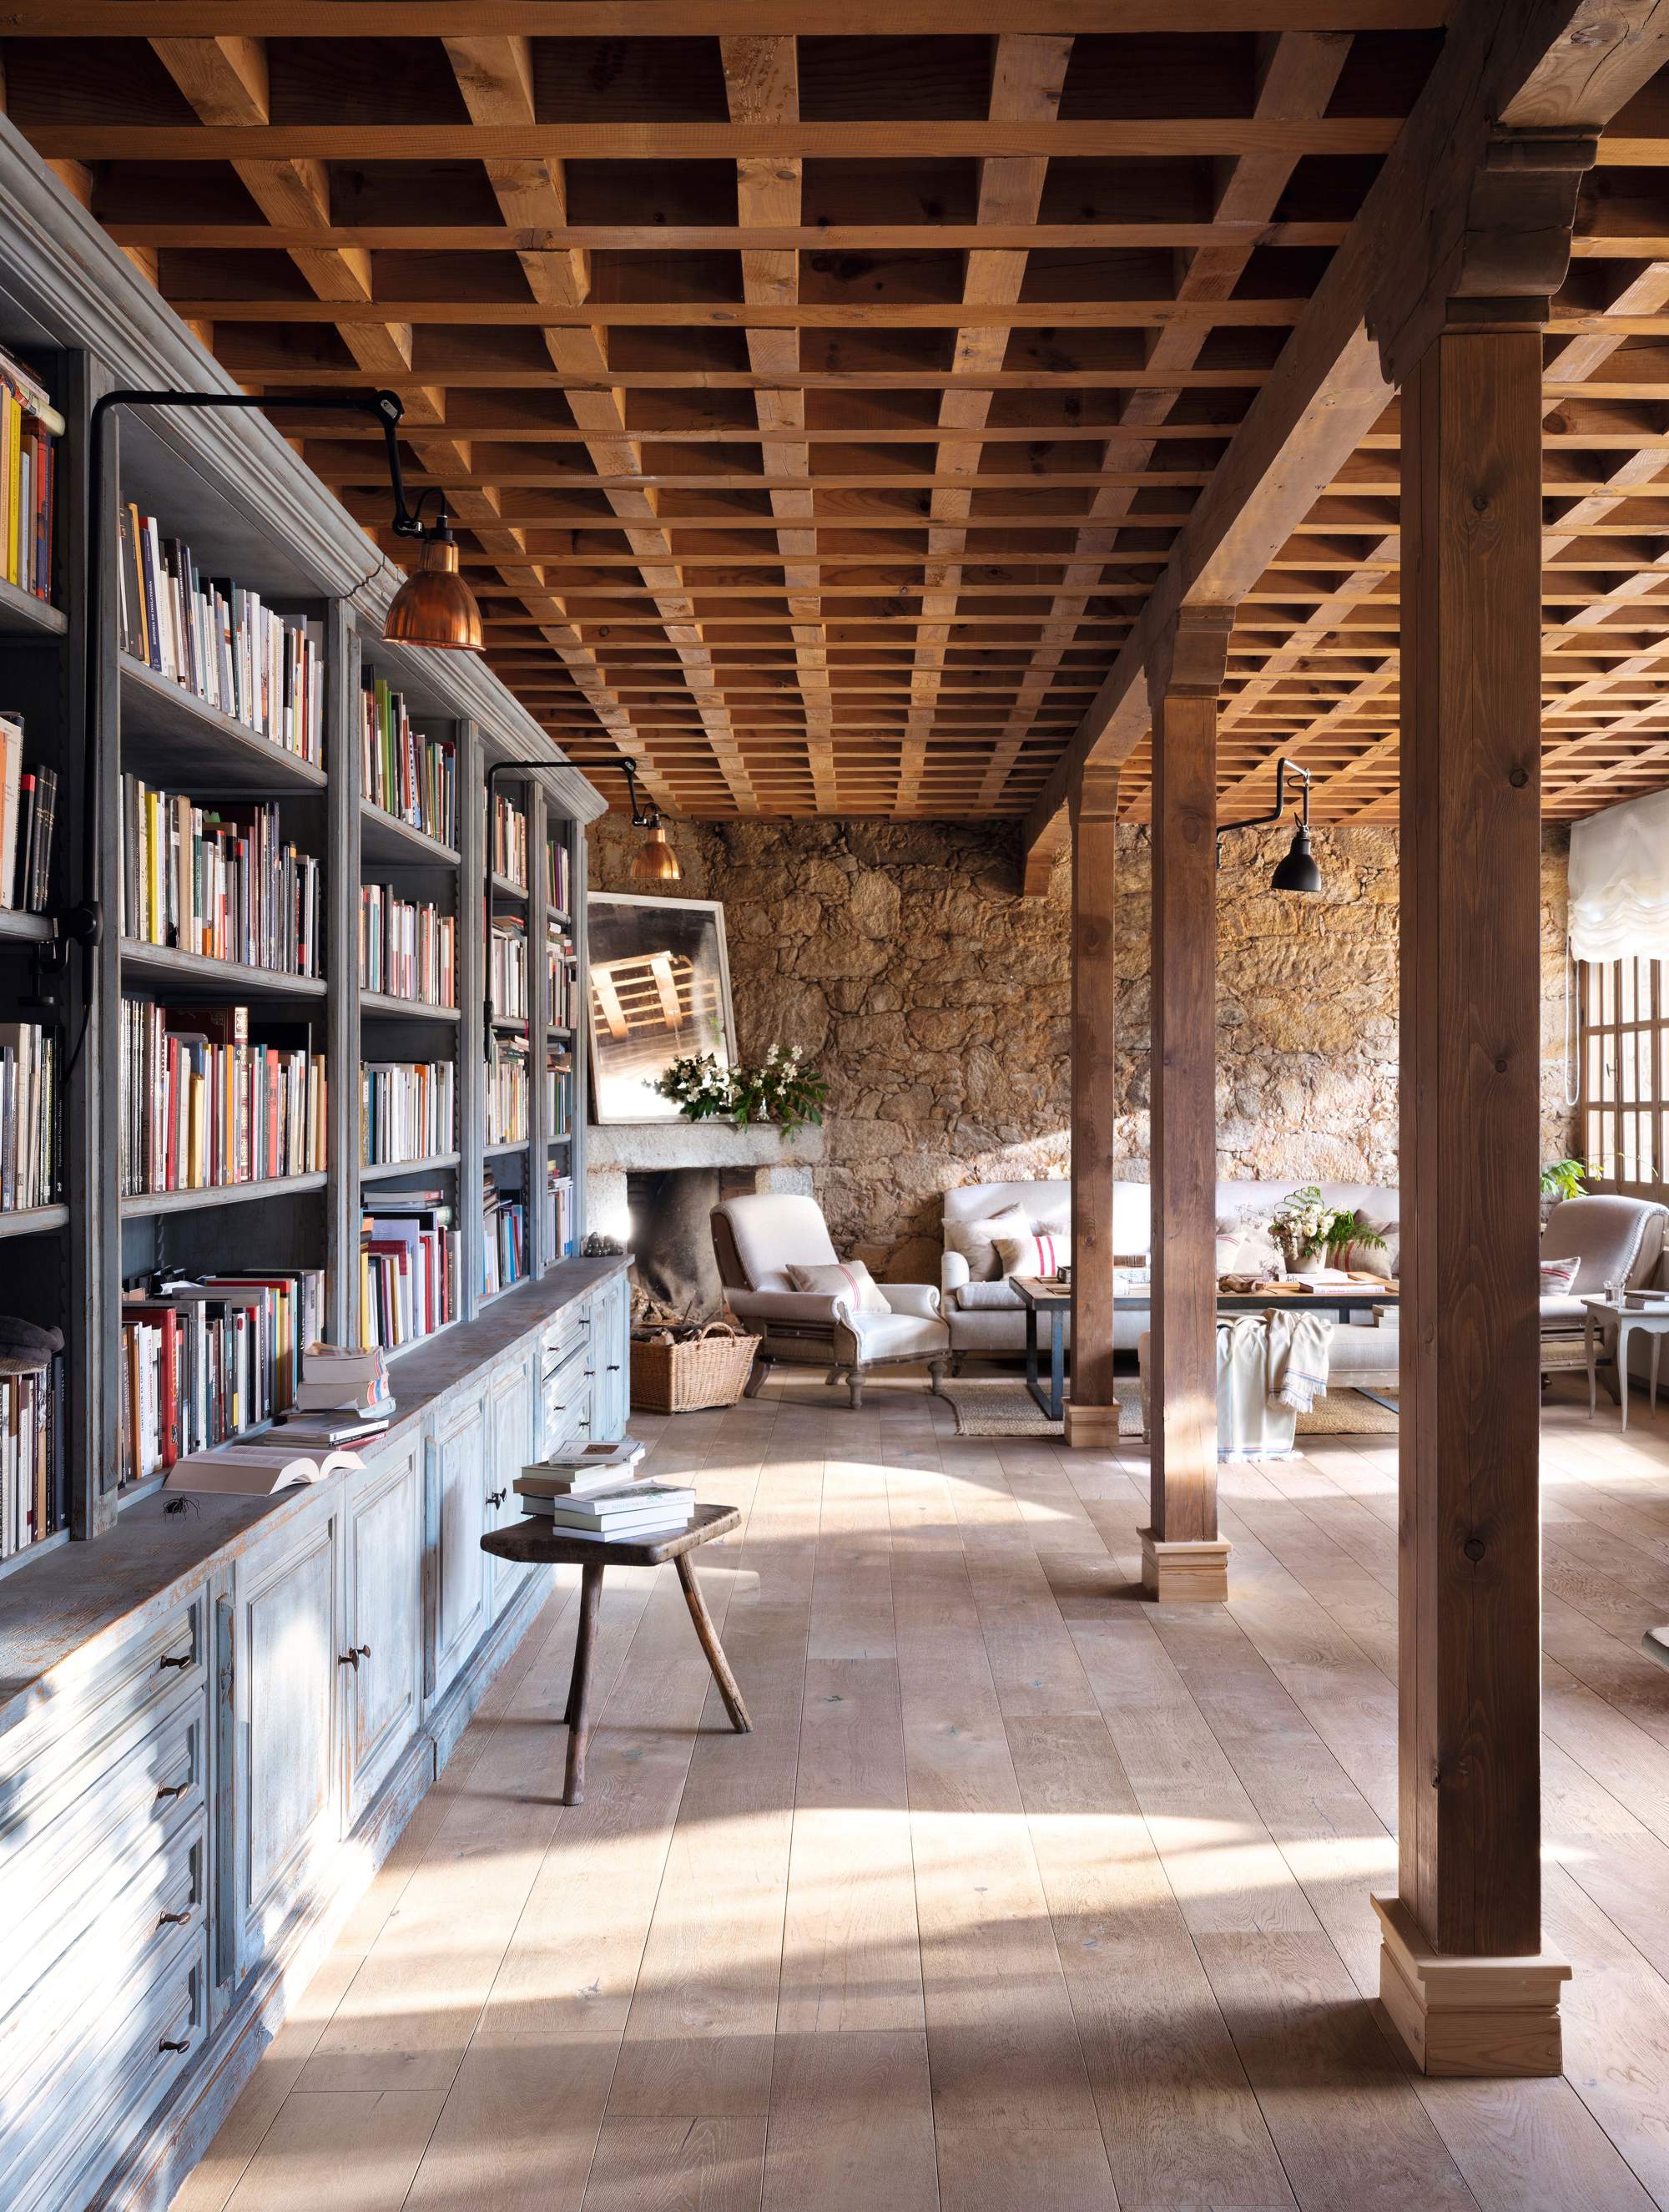 Salón con techo artesonado, suelo de madera natural y librería extra larga.